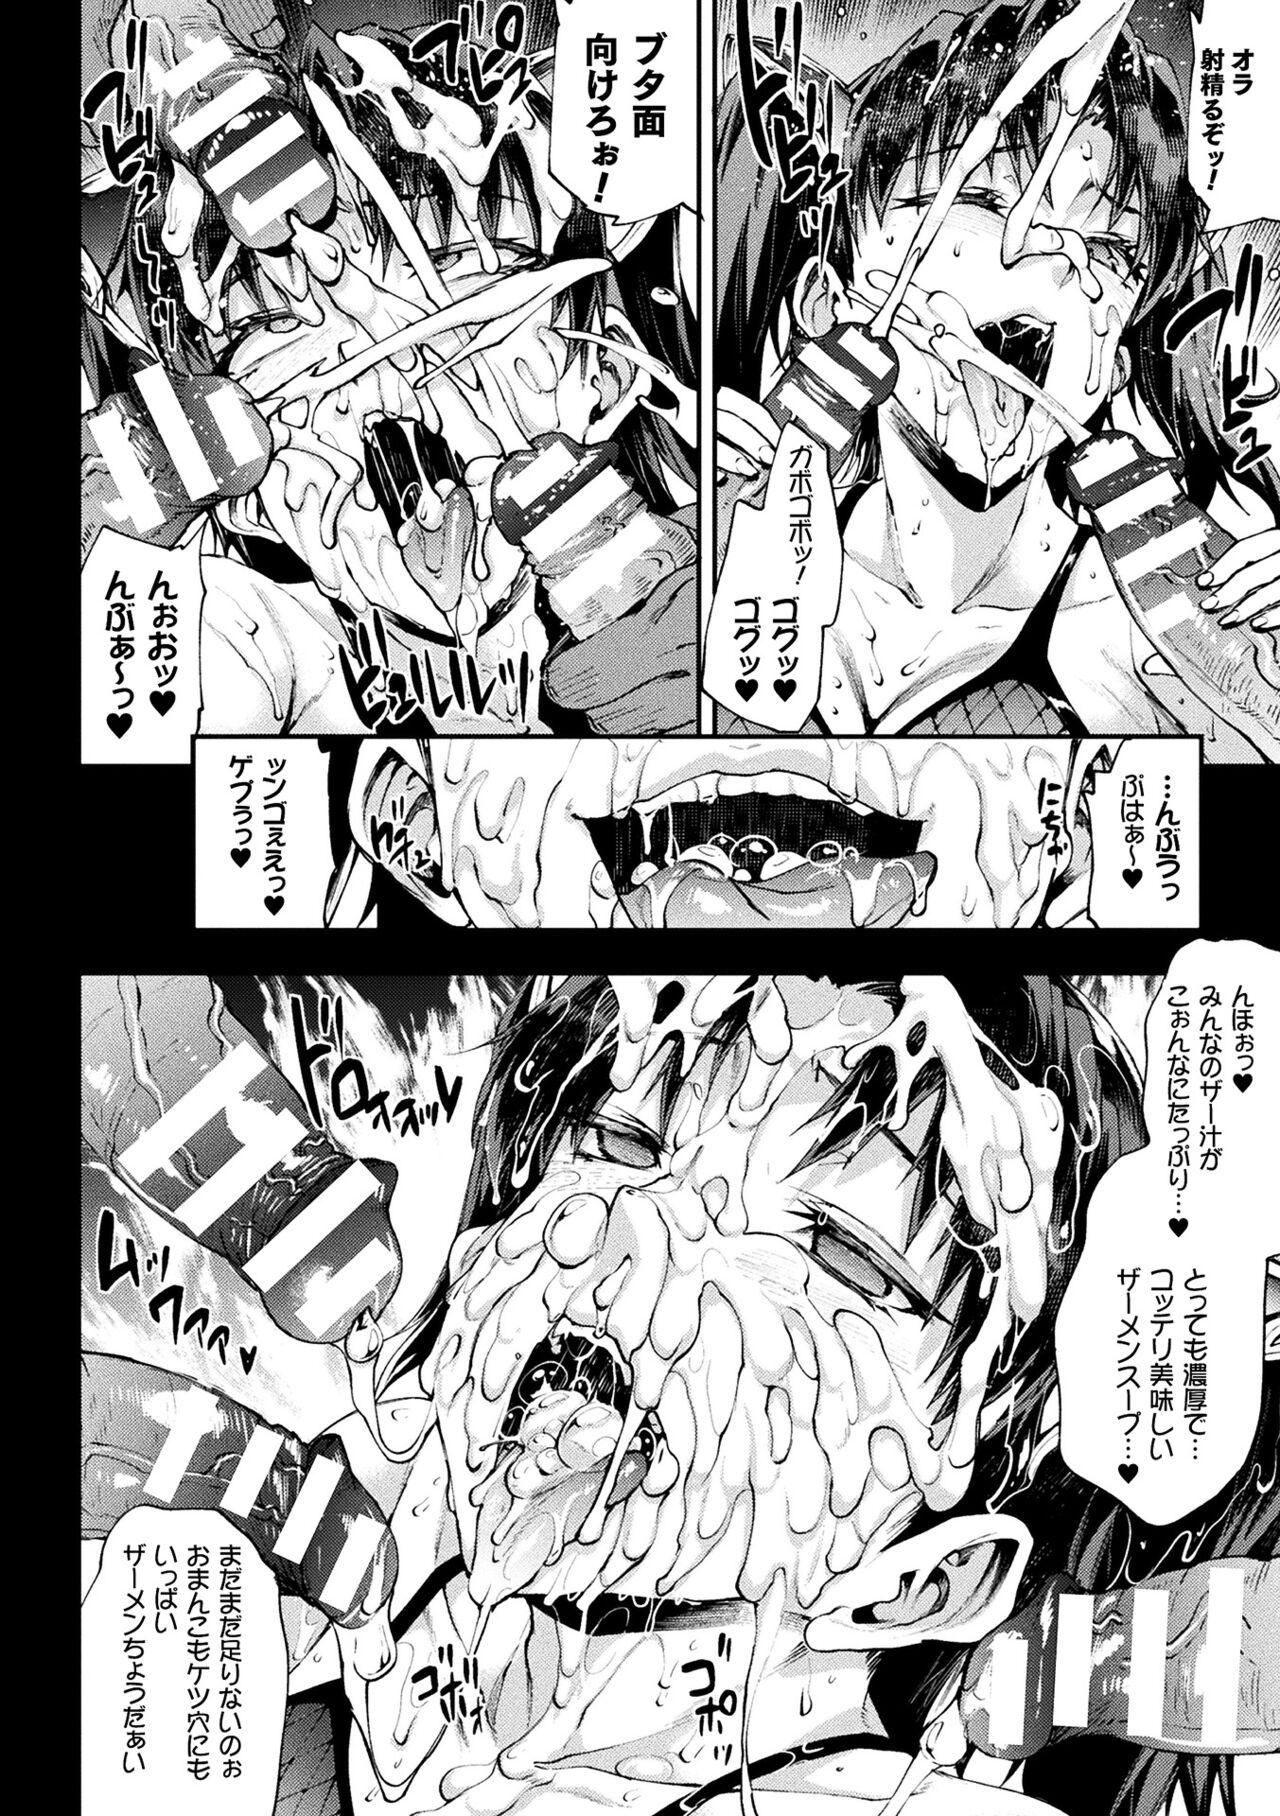 [Erect Sawaru] Raikou Shinki Igis Magia III -PANDRA saga 3rd ignition- 4 [Digital] 249